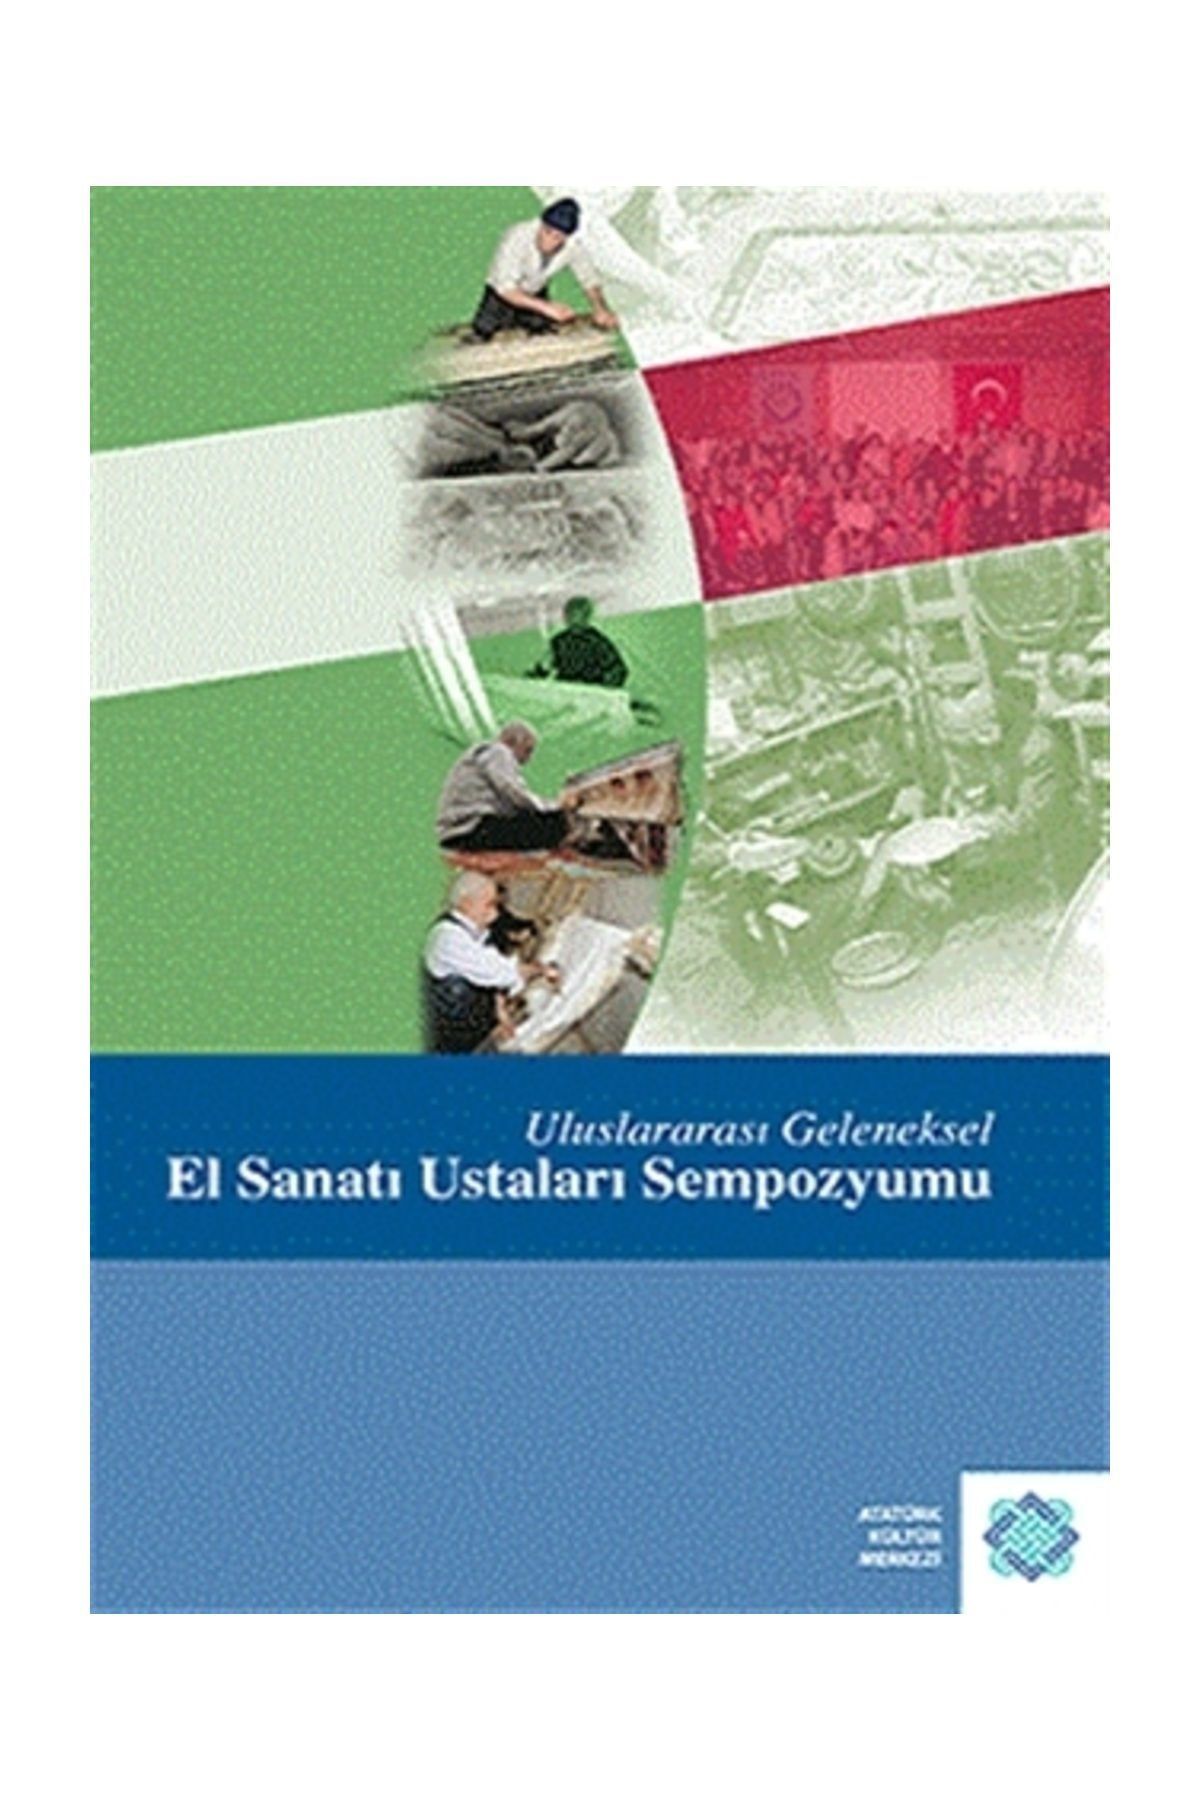 Atatürk Kültür Merkezi Yayınları Uluslararası Geleneksel El Sanatı Ustaları Sempozyumu - Kolektif